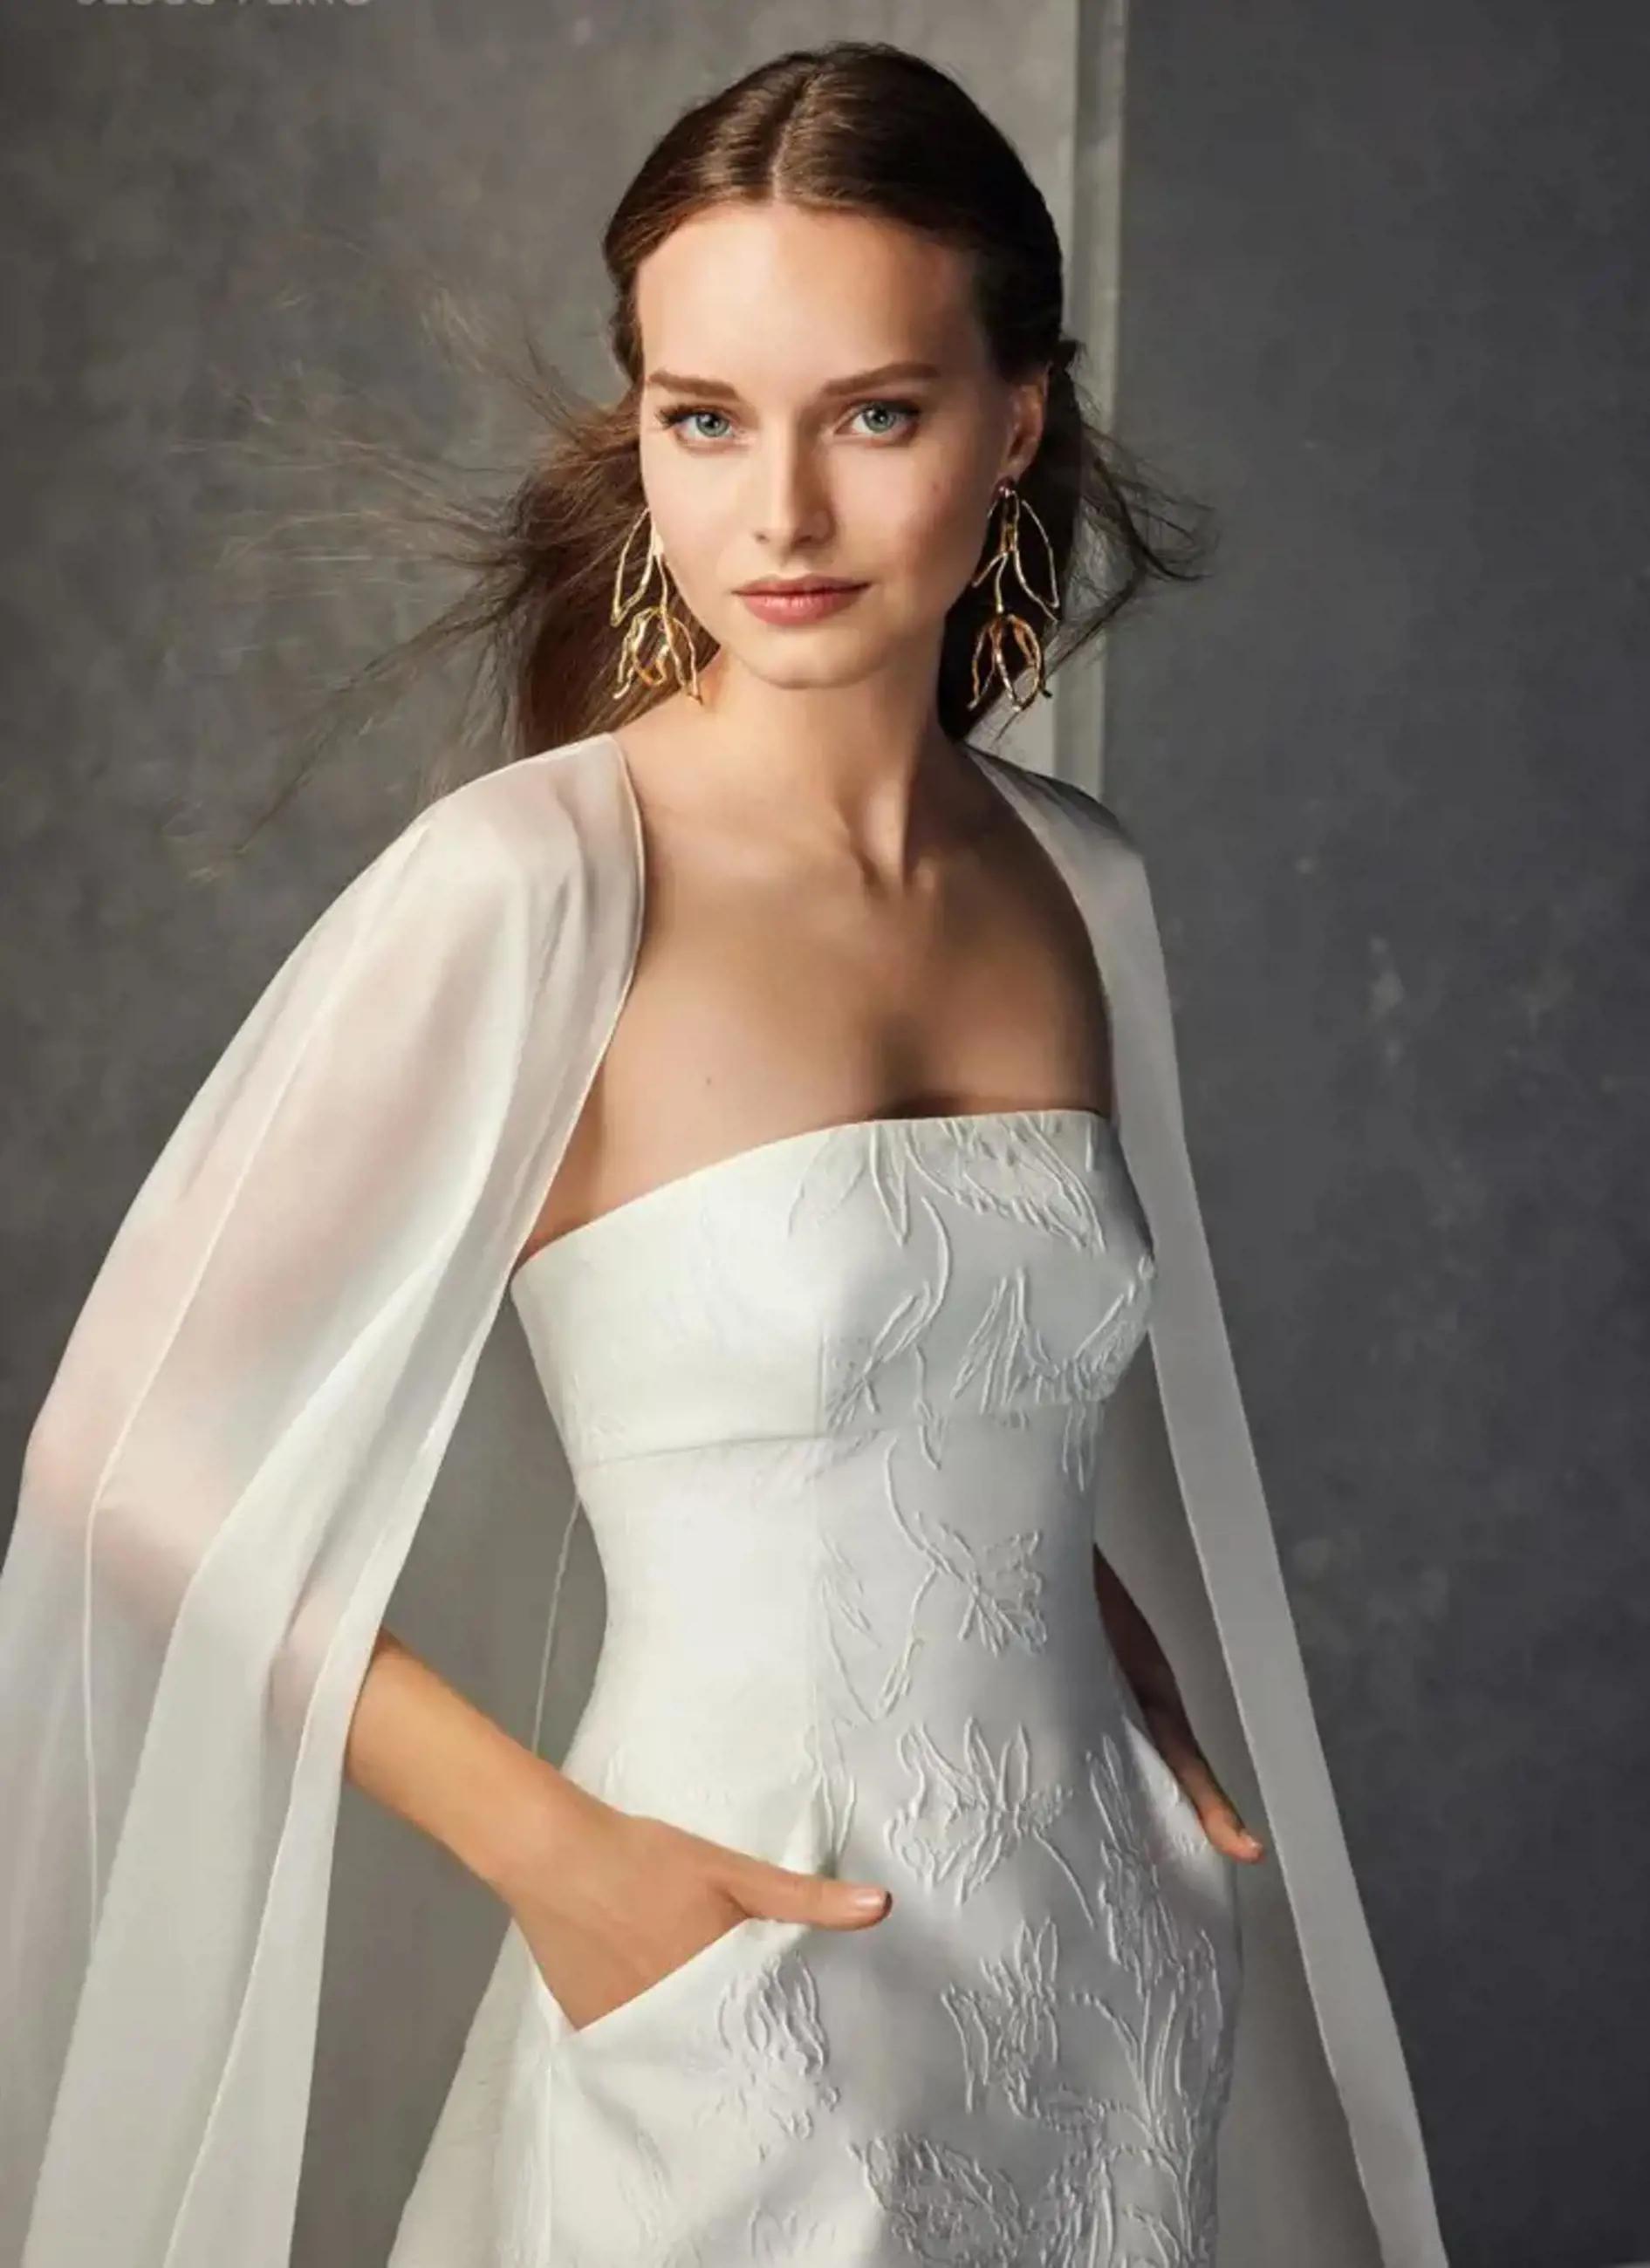 Morgan Davies Bridal Model wearing Jesus Peiro Bridal dress